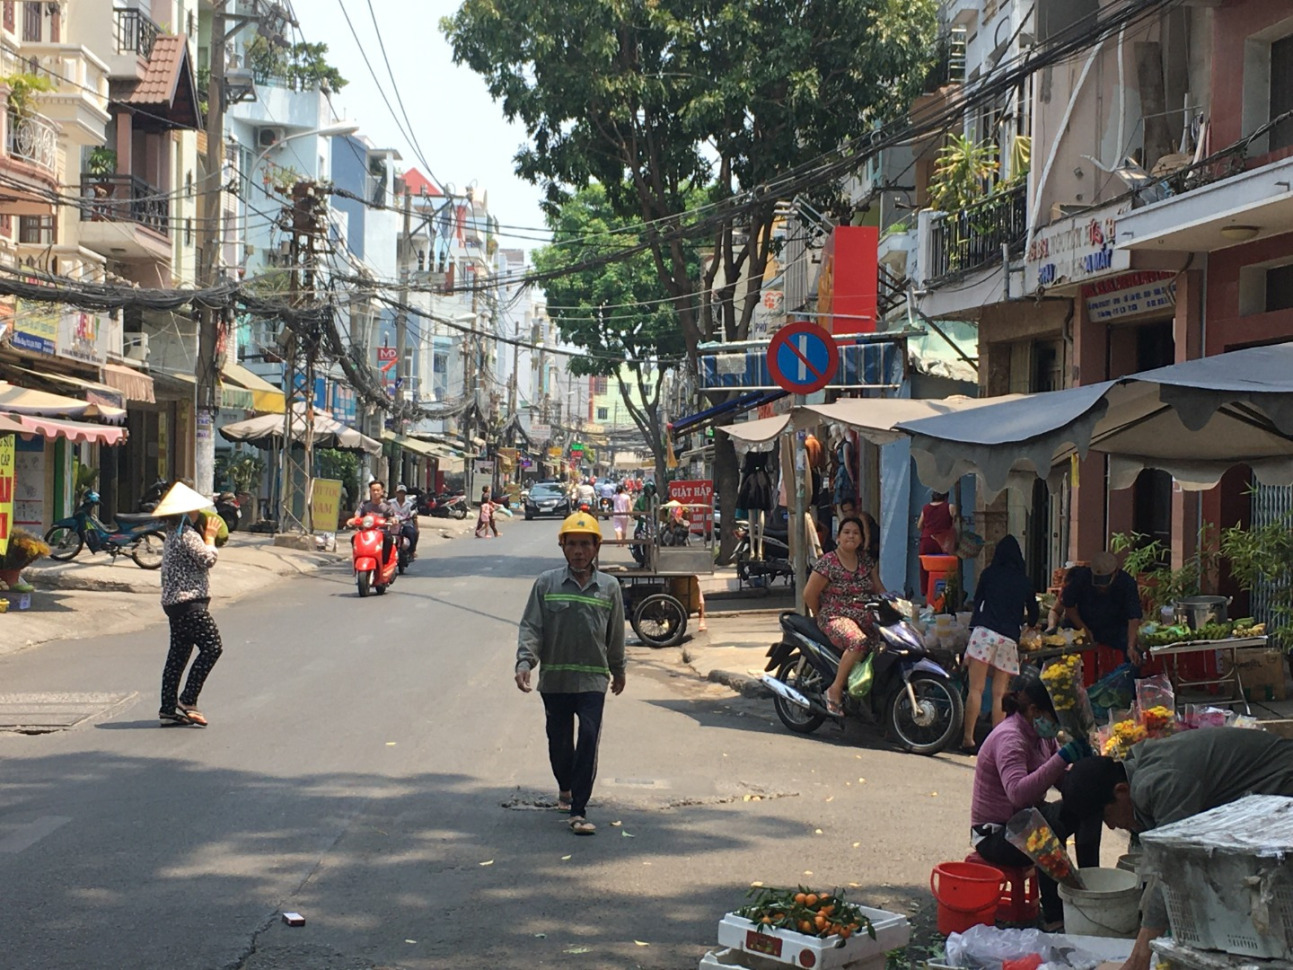 Streets of Saigon, Vietnam